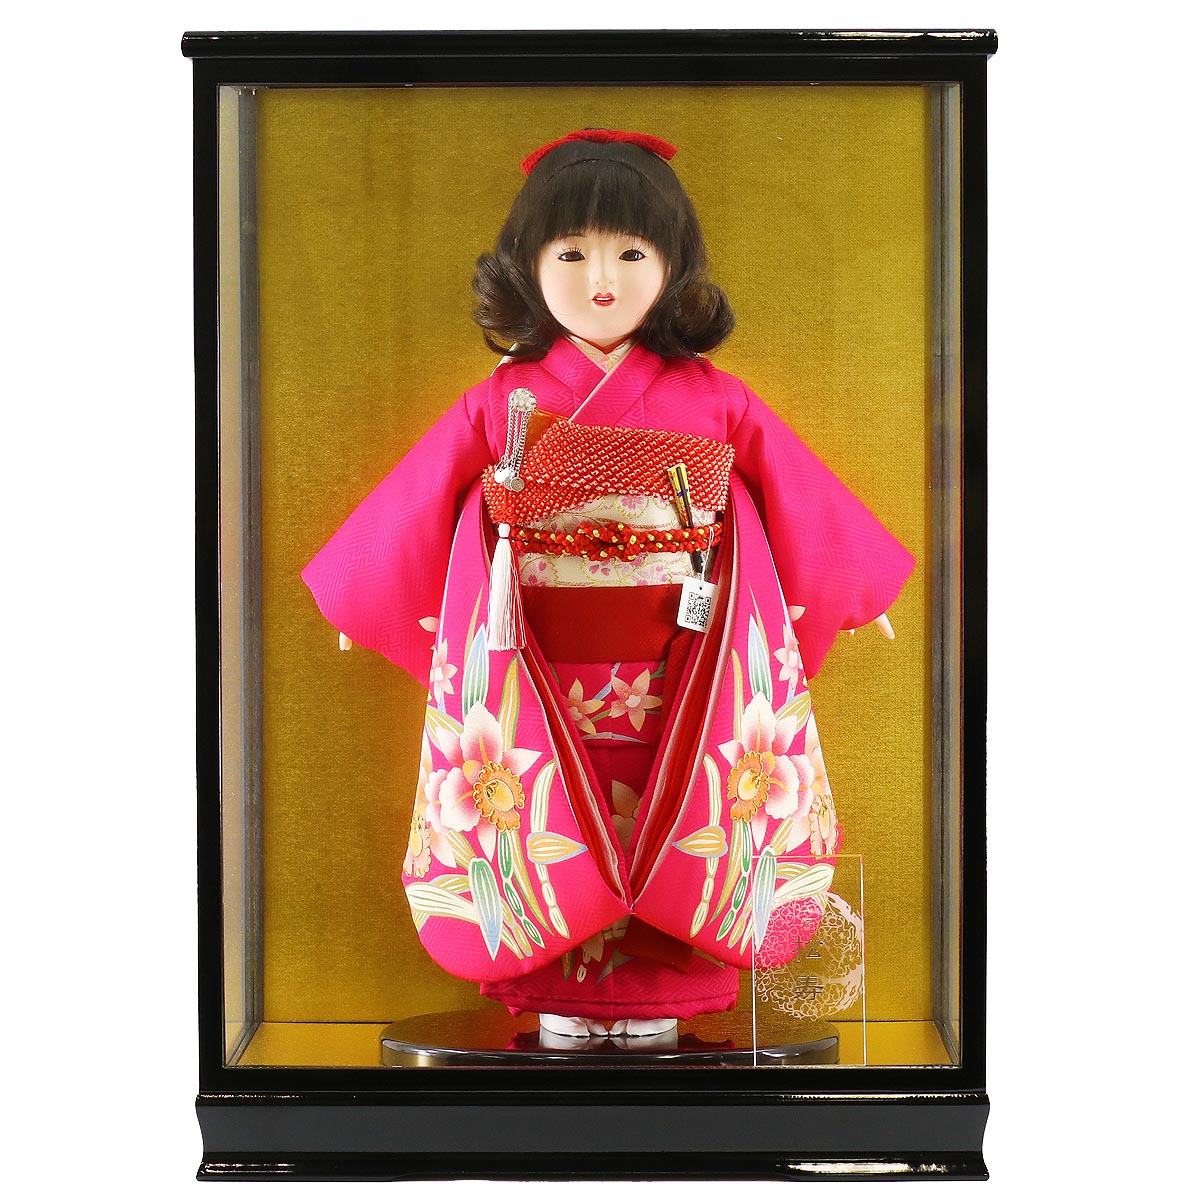 ひな祭りの由来や歴史、雛人形を飾ることの意味や、雛人形のご購入前後によくある質問をまとめました。 [si-65]本格的な段飾りから、コンパクトな収納飾りやケース飾りなど様々なタイプをご用意しております。 松寿作 市松人形 金彩京友禅 カトレア ガラスケース飾り （HB9） ■松寿作　市松人形　ケース入りガラスケース内寸：間口36×奥行27×高さ50cm 飾った際のサイズ　 間口38.5×奥行30×高さ55.5cm 　★ 詳細画像 ※小さい画像をクリックすると拡大表示されます。※スマホの場合は画像を左右にスワイプすると次の画像が表示されます。 商品名商品番号 松寿作 市松人形 金彩京友禅 カトレア ガラスケース飾り （HB9）ICMY-RE12-44-C（HB9） 飾った際のサイズ 間口38.5×奥行30×高さ55.5cm 説明・仕様など ■ガラスケース仕様 ギフト対応 大切な方へ贈るお祝いやプレゼントに最適なギフト対応を承ります。 　 ギフト対応注文についてはコチラをクリック！（新しいウィンドウで開きます） ※ご自宅へ配送の場合でも、価格の分かる明細書などはお入れしていない為、明細書や領収証が必要な場合はお申し付け下さい。 雛人形は職人が一つ一つ手作りしているため、商品写真と一部仕様が異なる場合がございます。 お人形は衣装の柄の出方や、木製部分は木地の色の濃淡や木目の出方が画像と異なります。 また、使用しているモニターやOSなどの環境によって、色や風合いが違って見える場合がございます。 予めご了承ください。